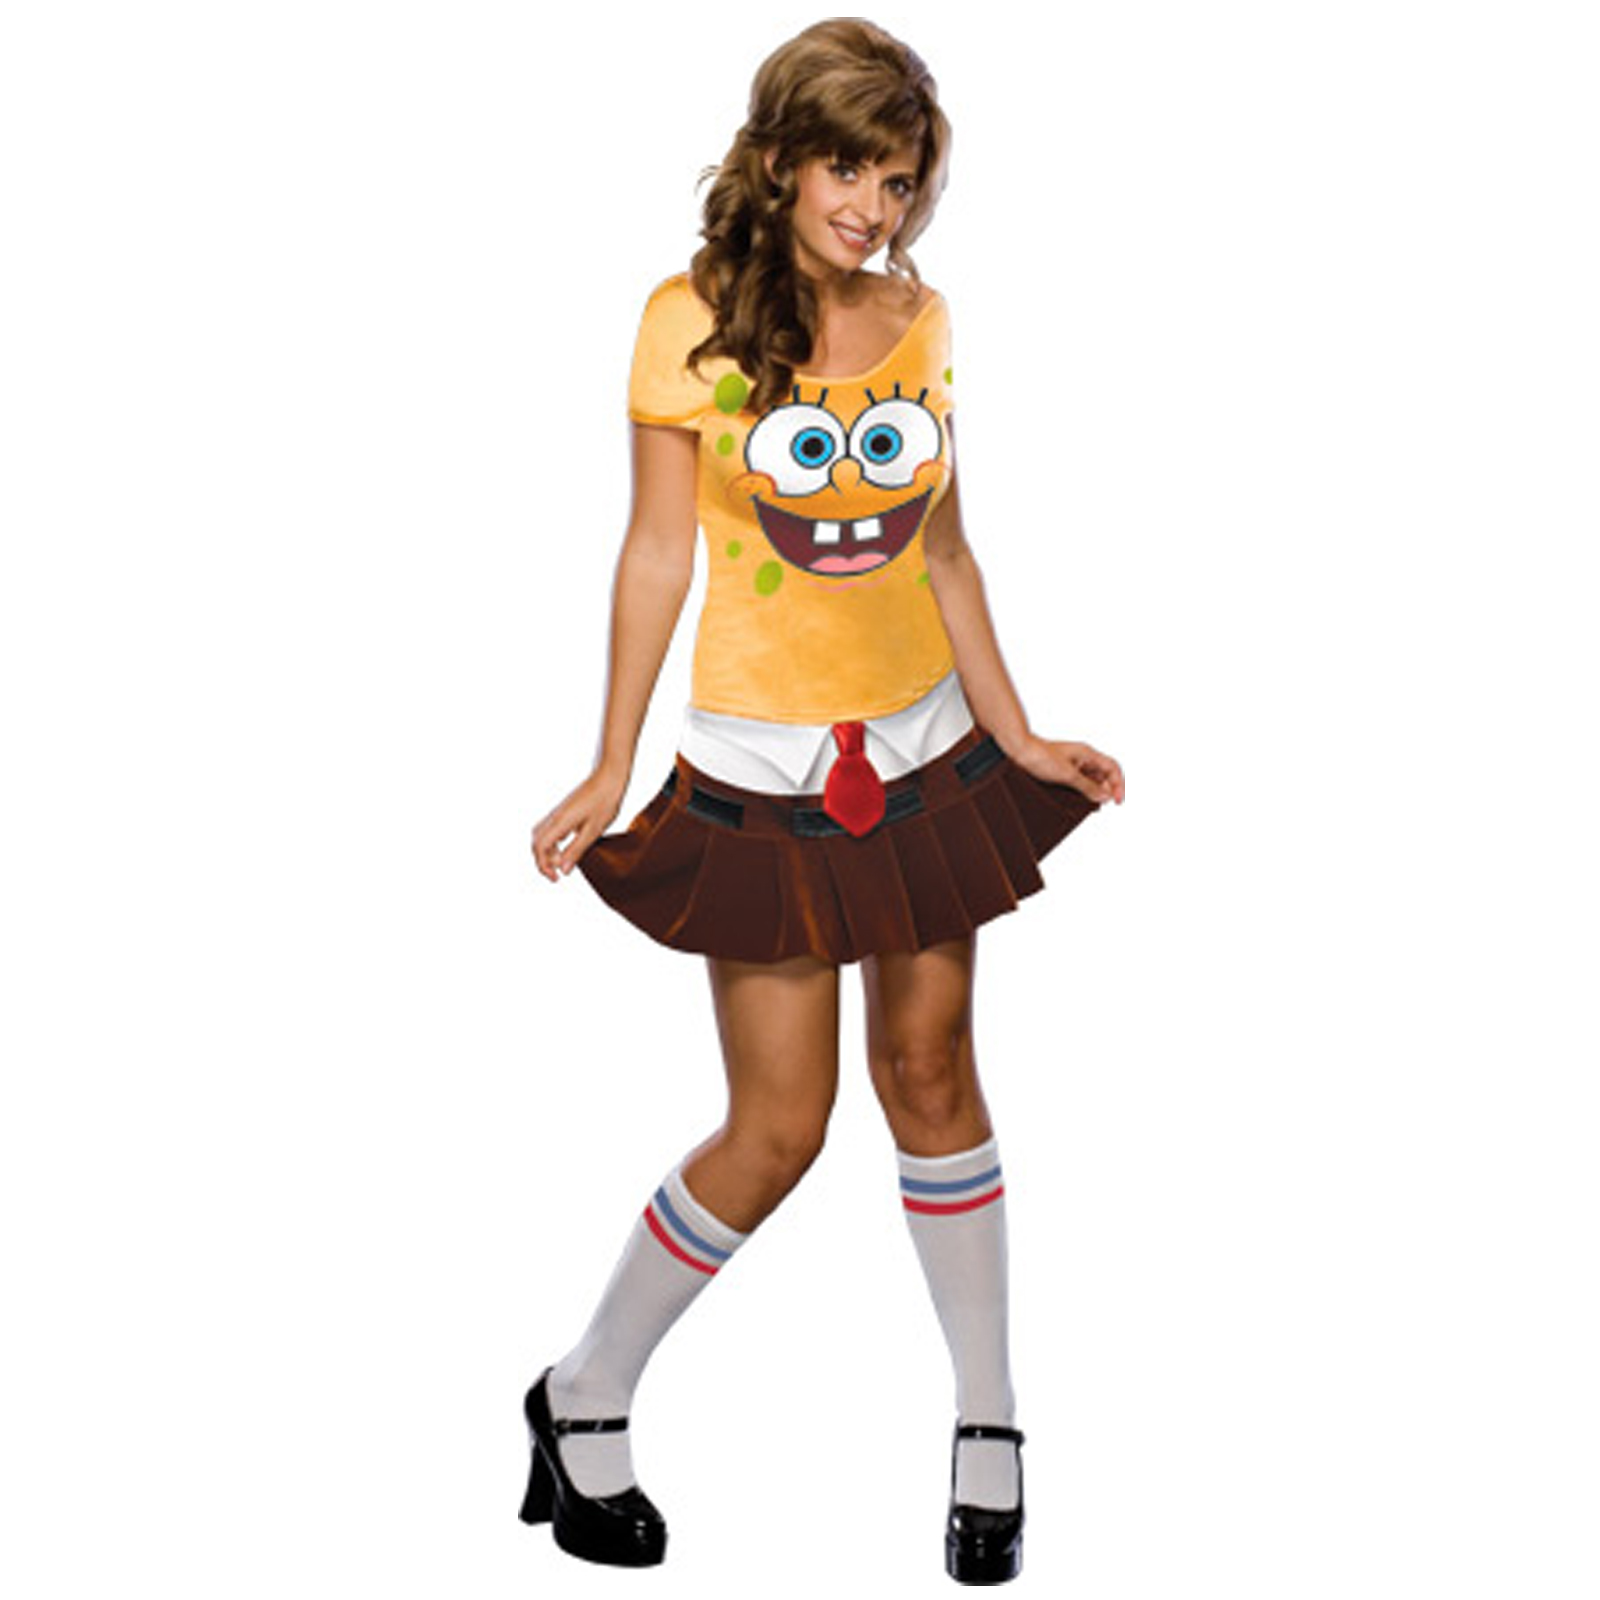 Sponge bob costume 5